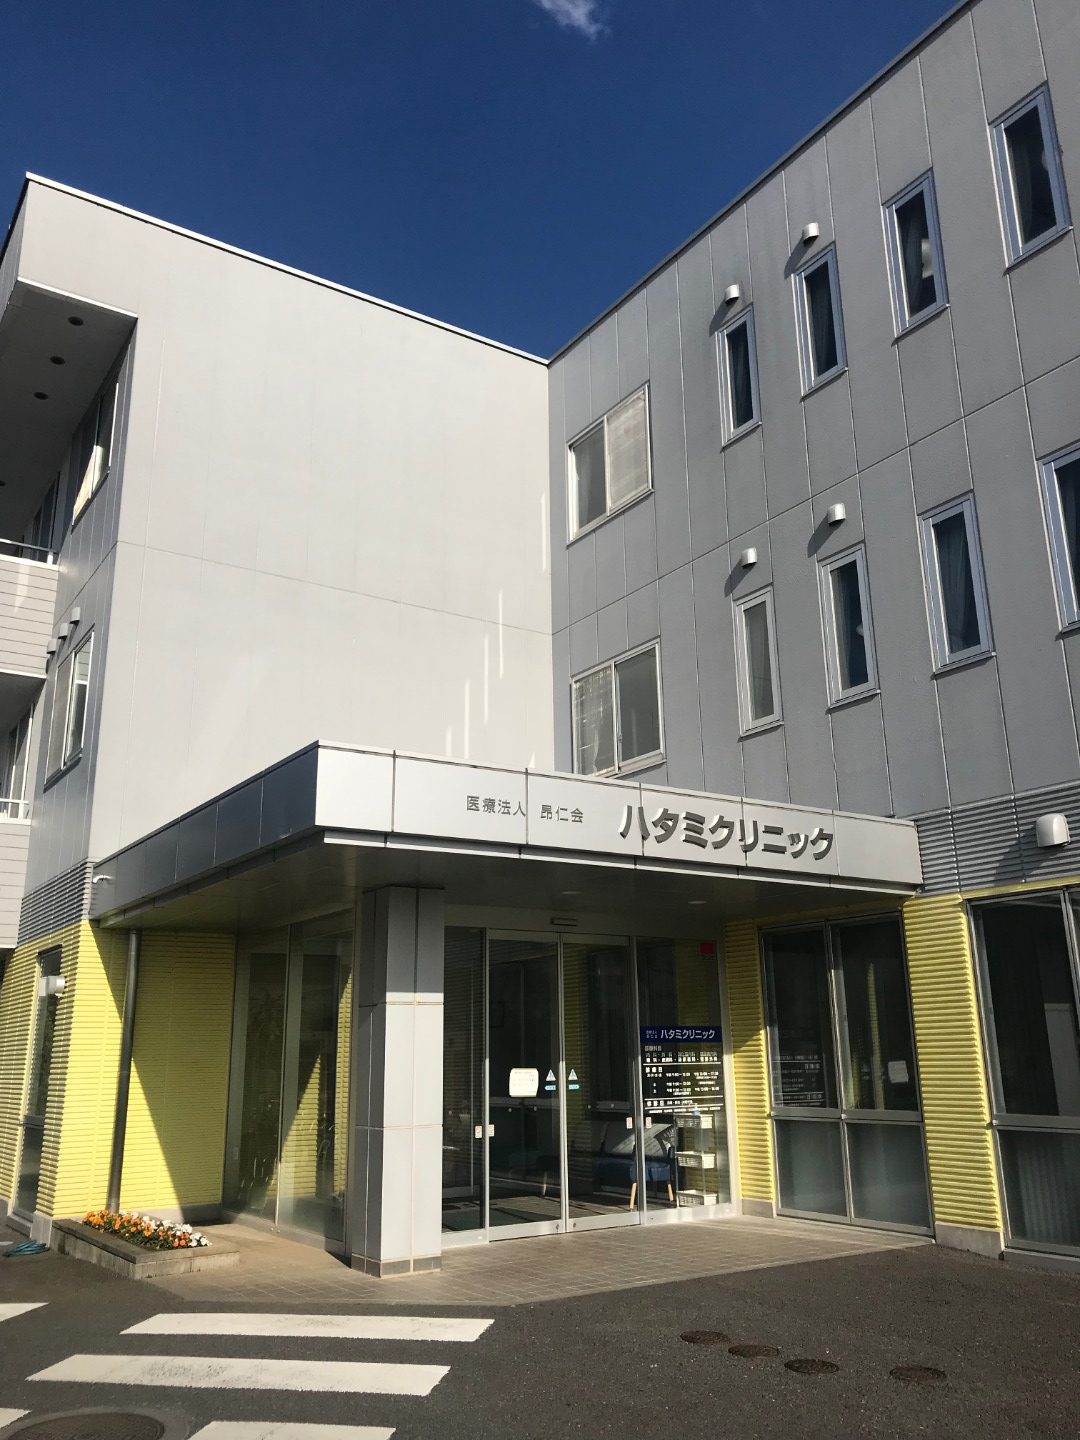 ハタミクリニック 鉾田市 内科 眼科 介護老人保健施設